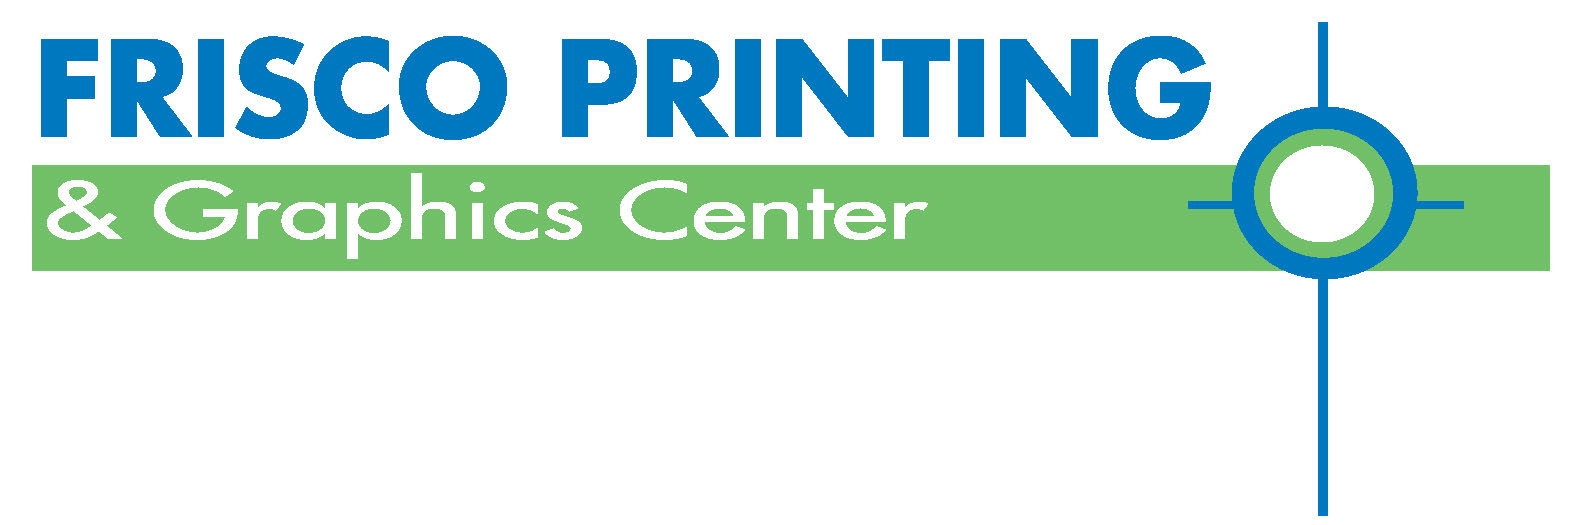 Frisco Printing Logo (1)